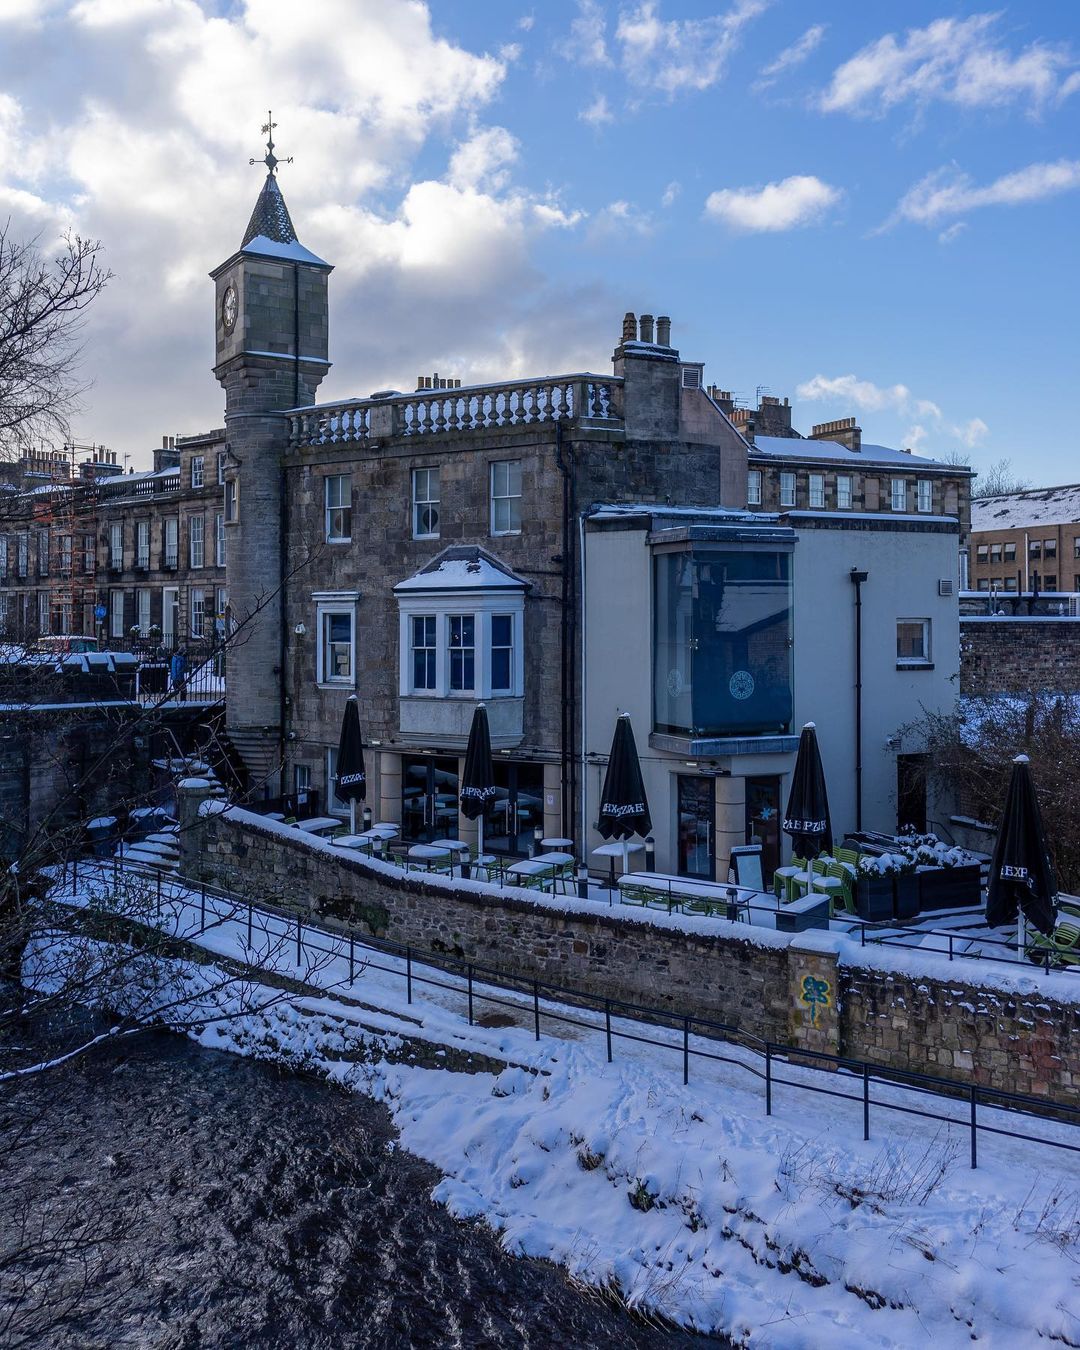 Эдинбург готический Равикант, Шотландии, Шотландия, именно, остались, фотография, пейзажная, пейзажи, городские, интересуют, всего, Больше, Эдинбурге, проходят, зачастую, путешествия, Съемки, мегаполиса, родного, своего